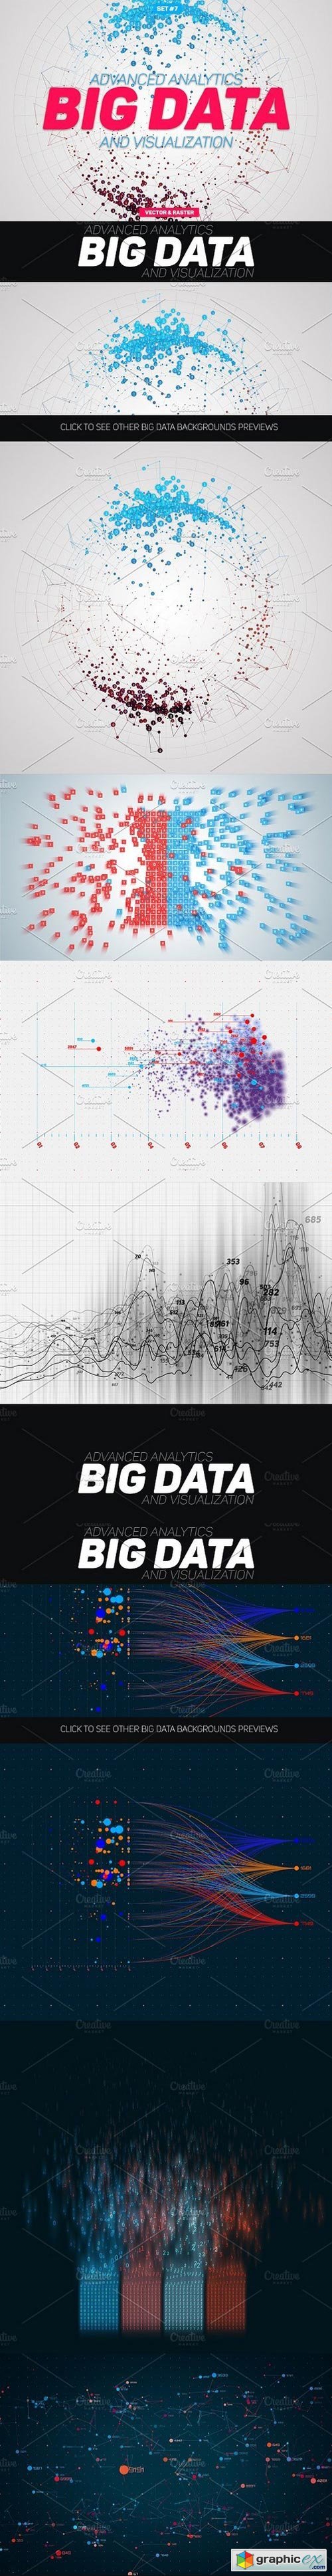 Big Data Abstract Graphs Set#7